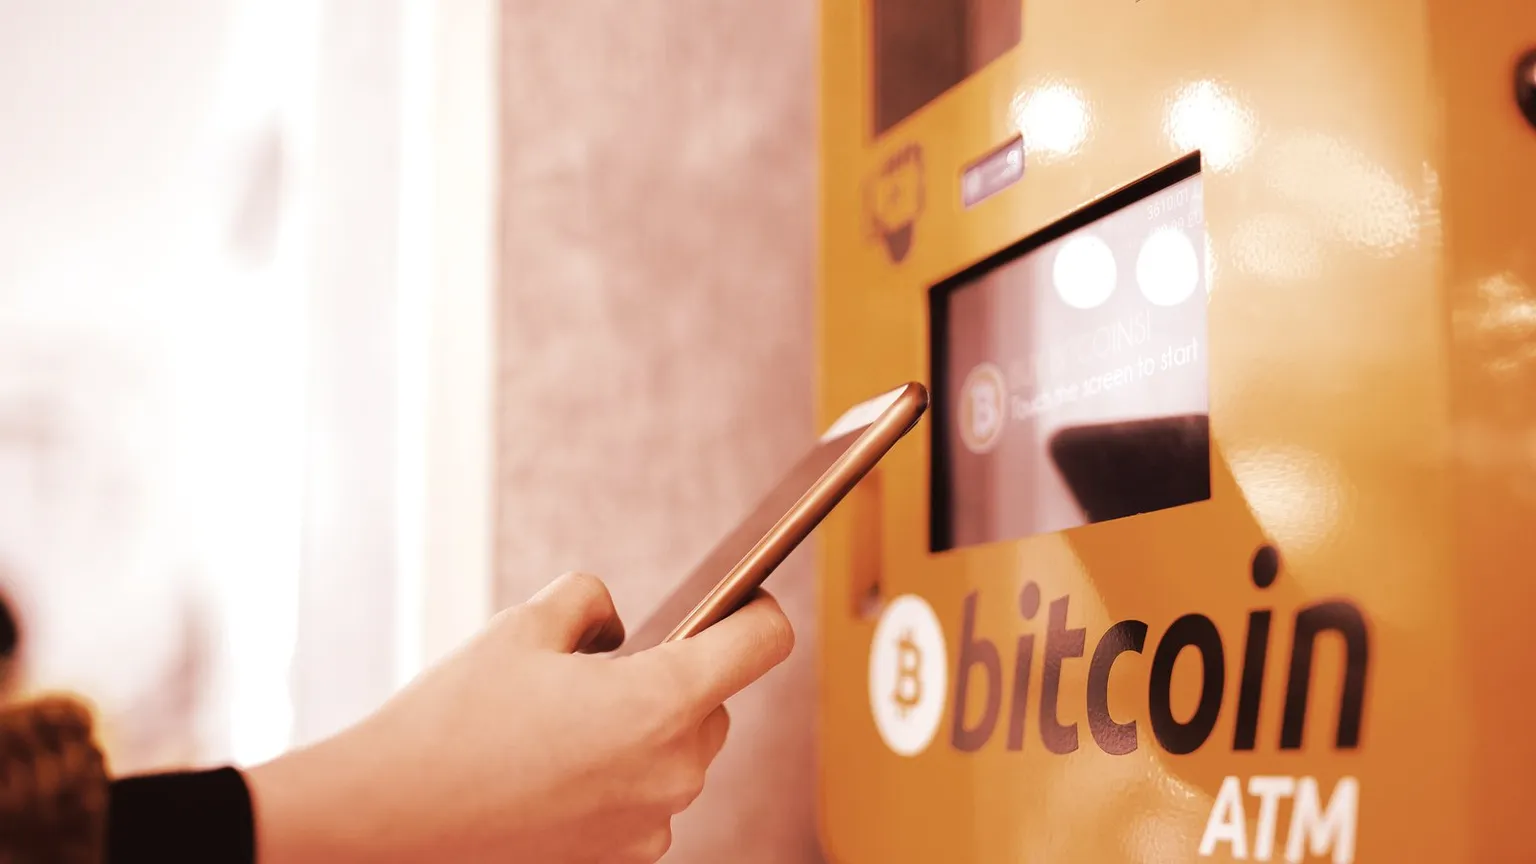 Los cajeros automáticos de Bitcoin permiten a los usuarios comprar y vender Bitcoin a cambio de dinero. Imagen: Shutterstock